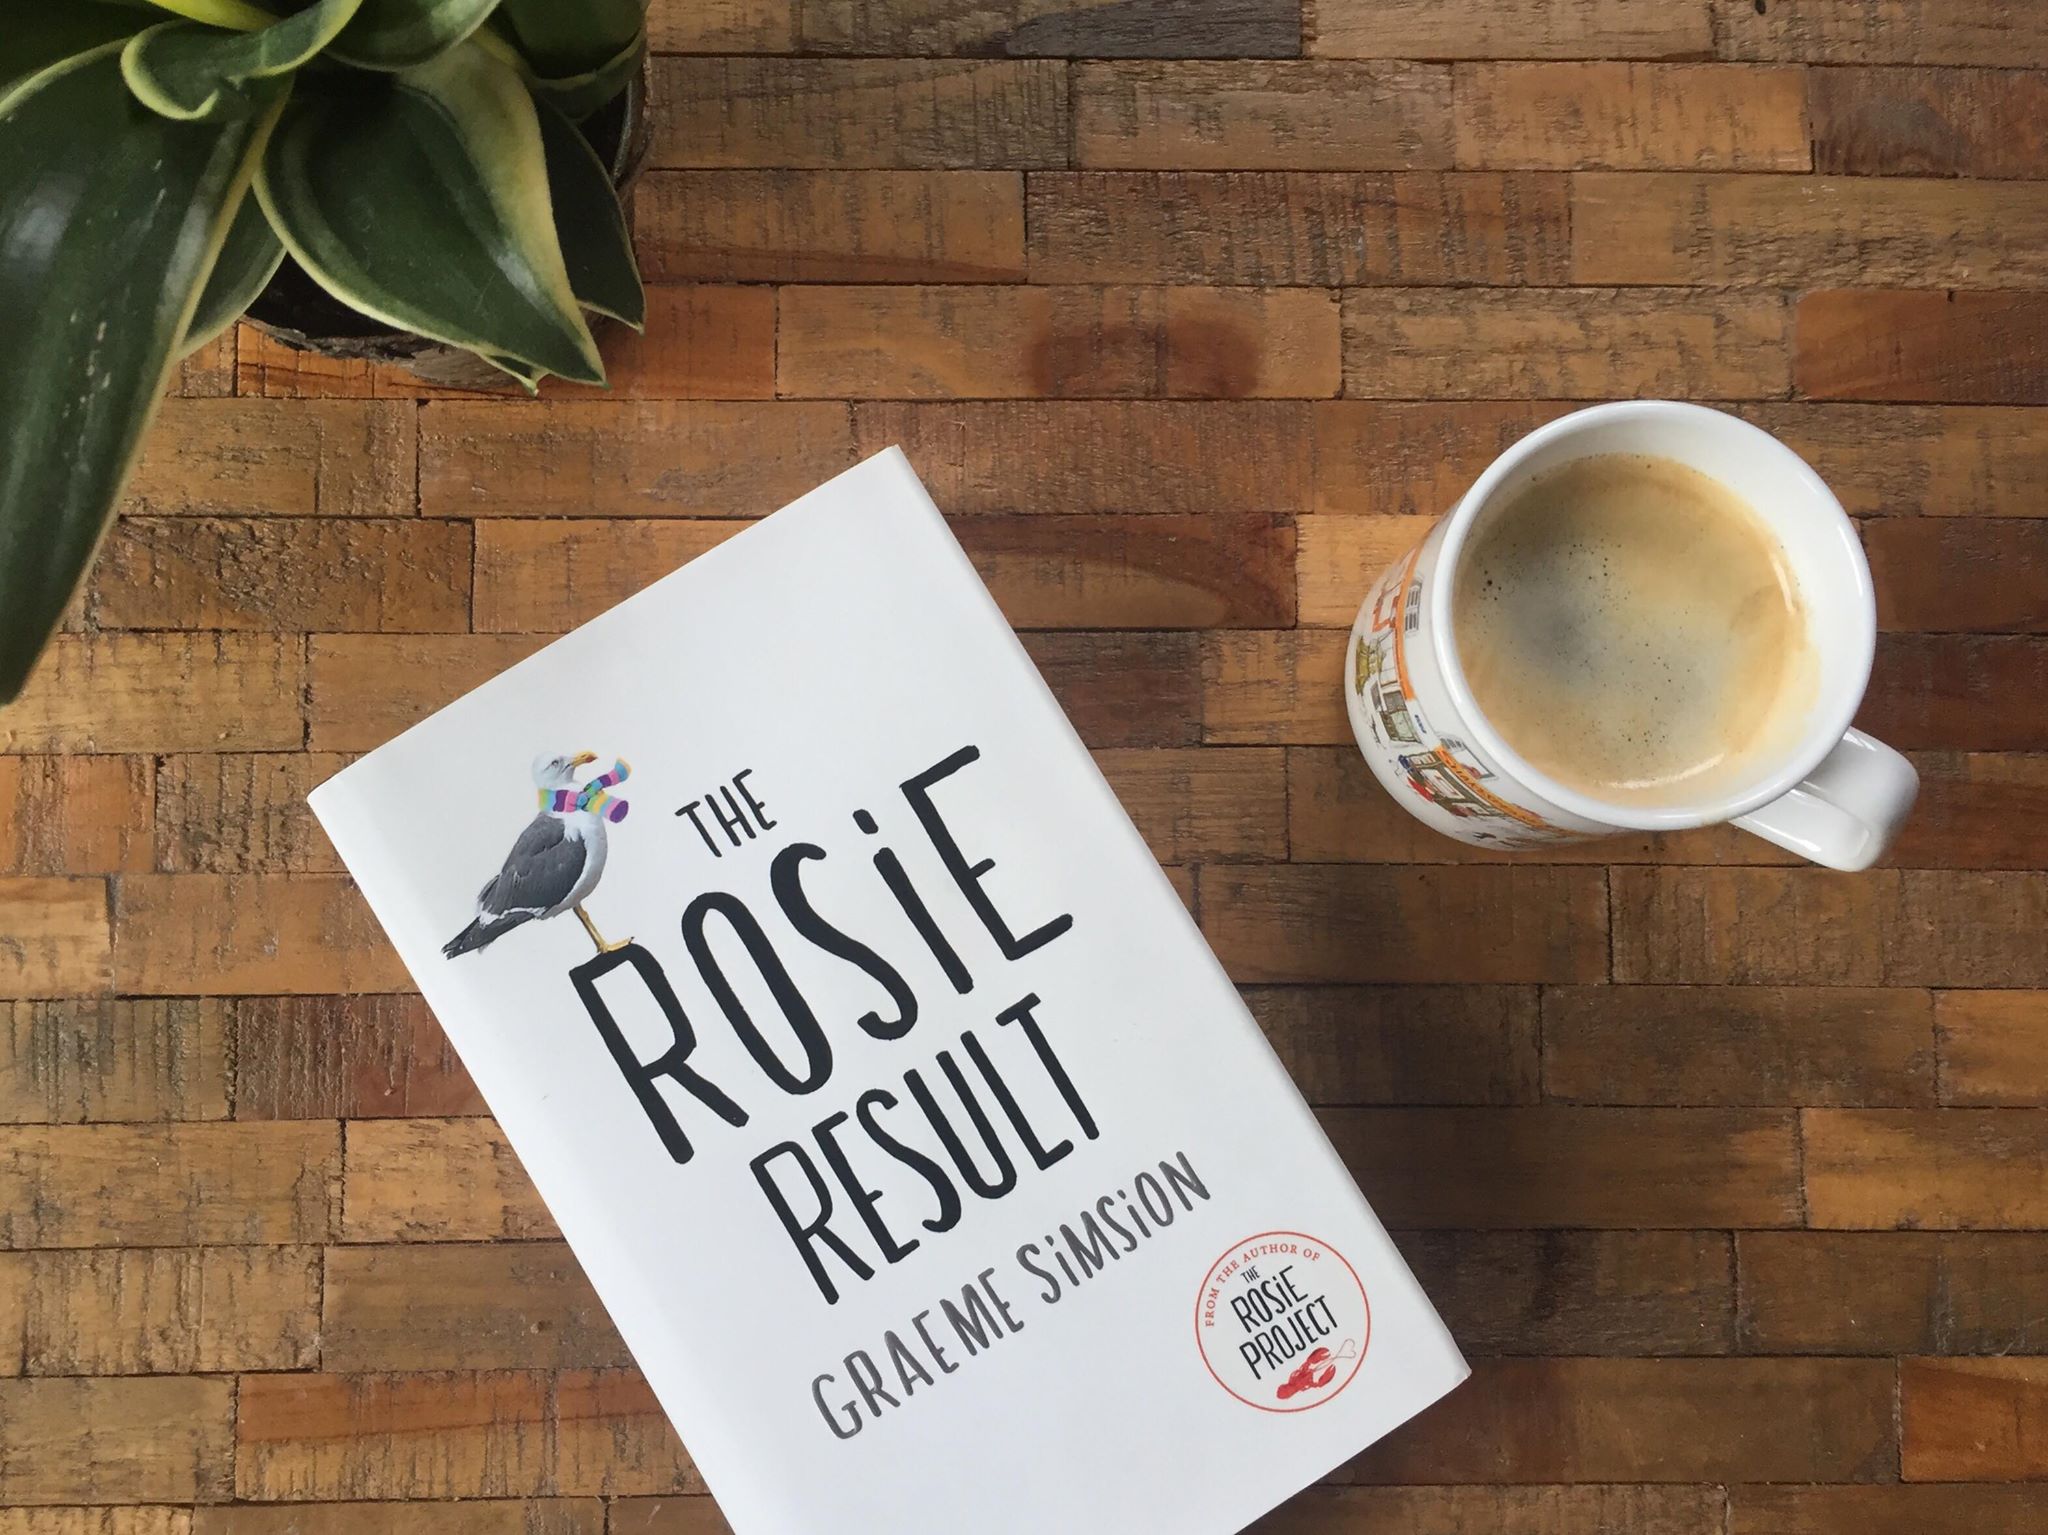 Het Rosie Resultaat van Graeme Simsion Recensie by Book Barista